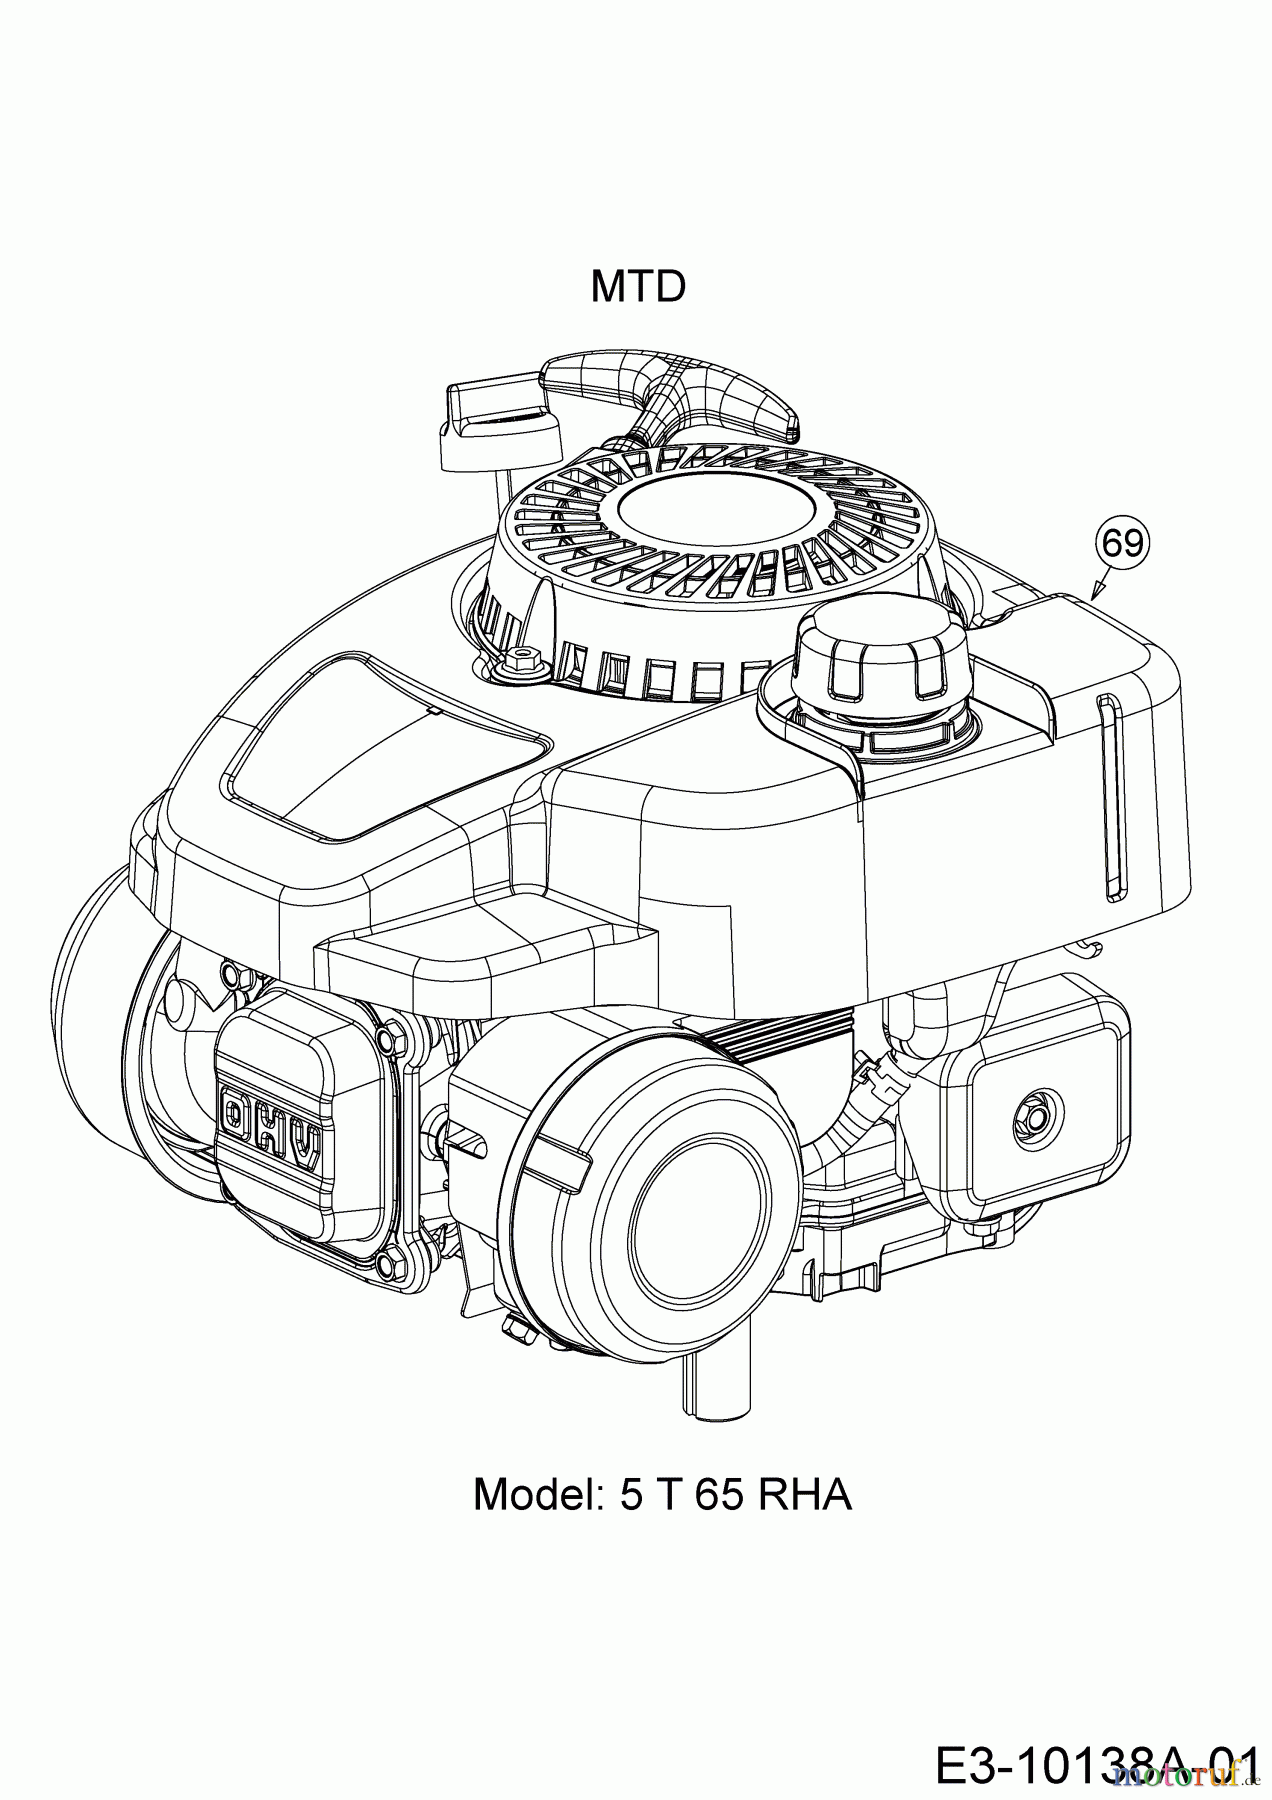  Wolf-Garten Motormäher mit Antrieb A 4600 A 12A-TOSC650 (2019) Motor MTD